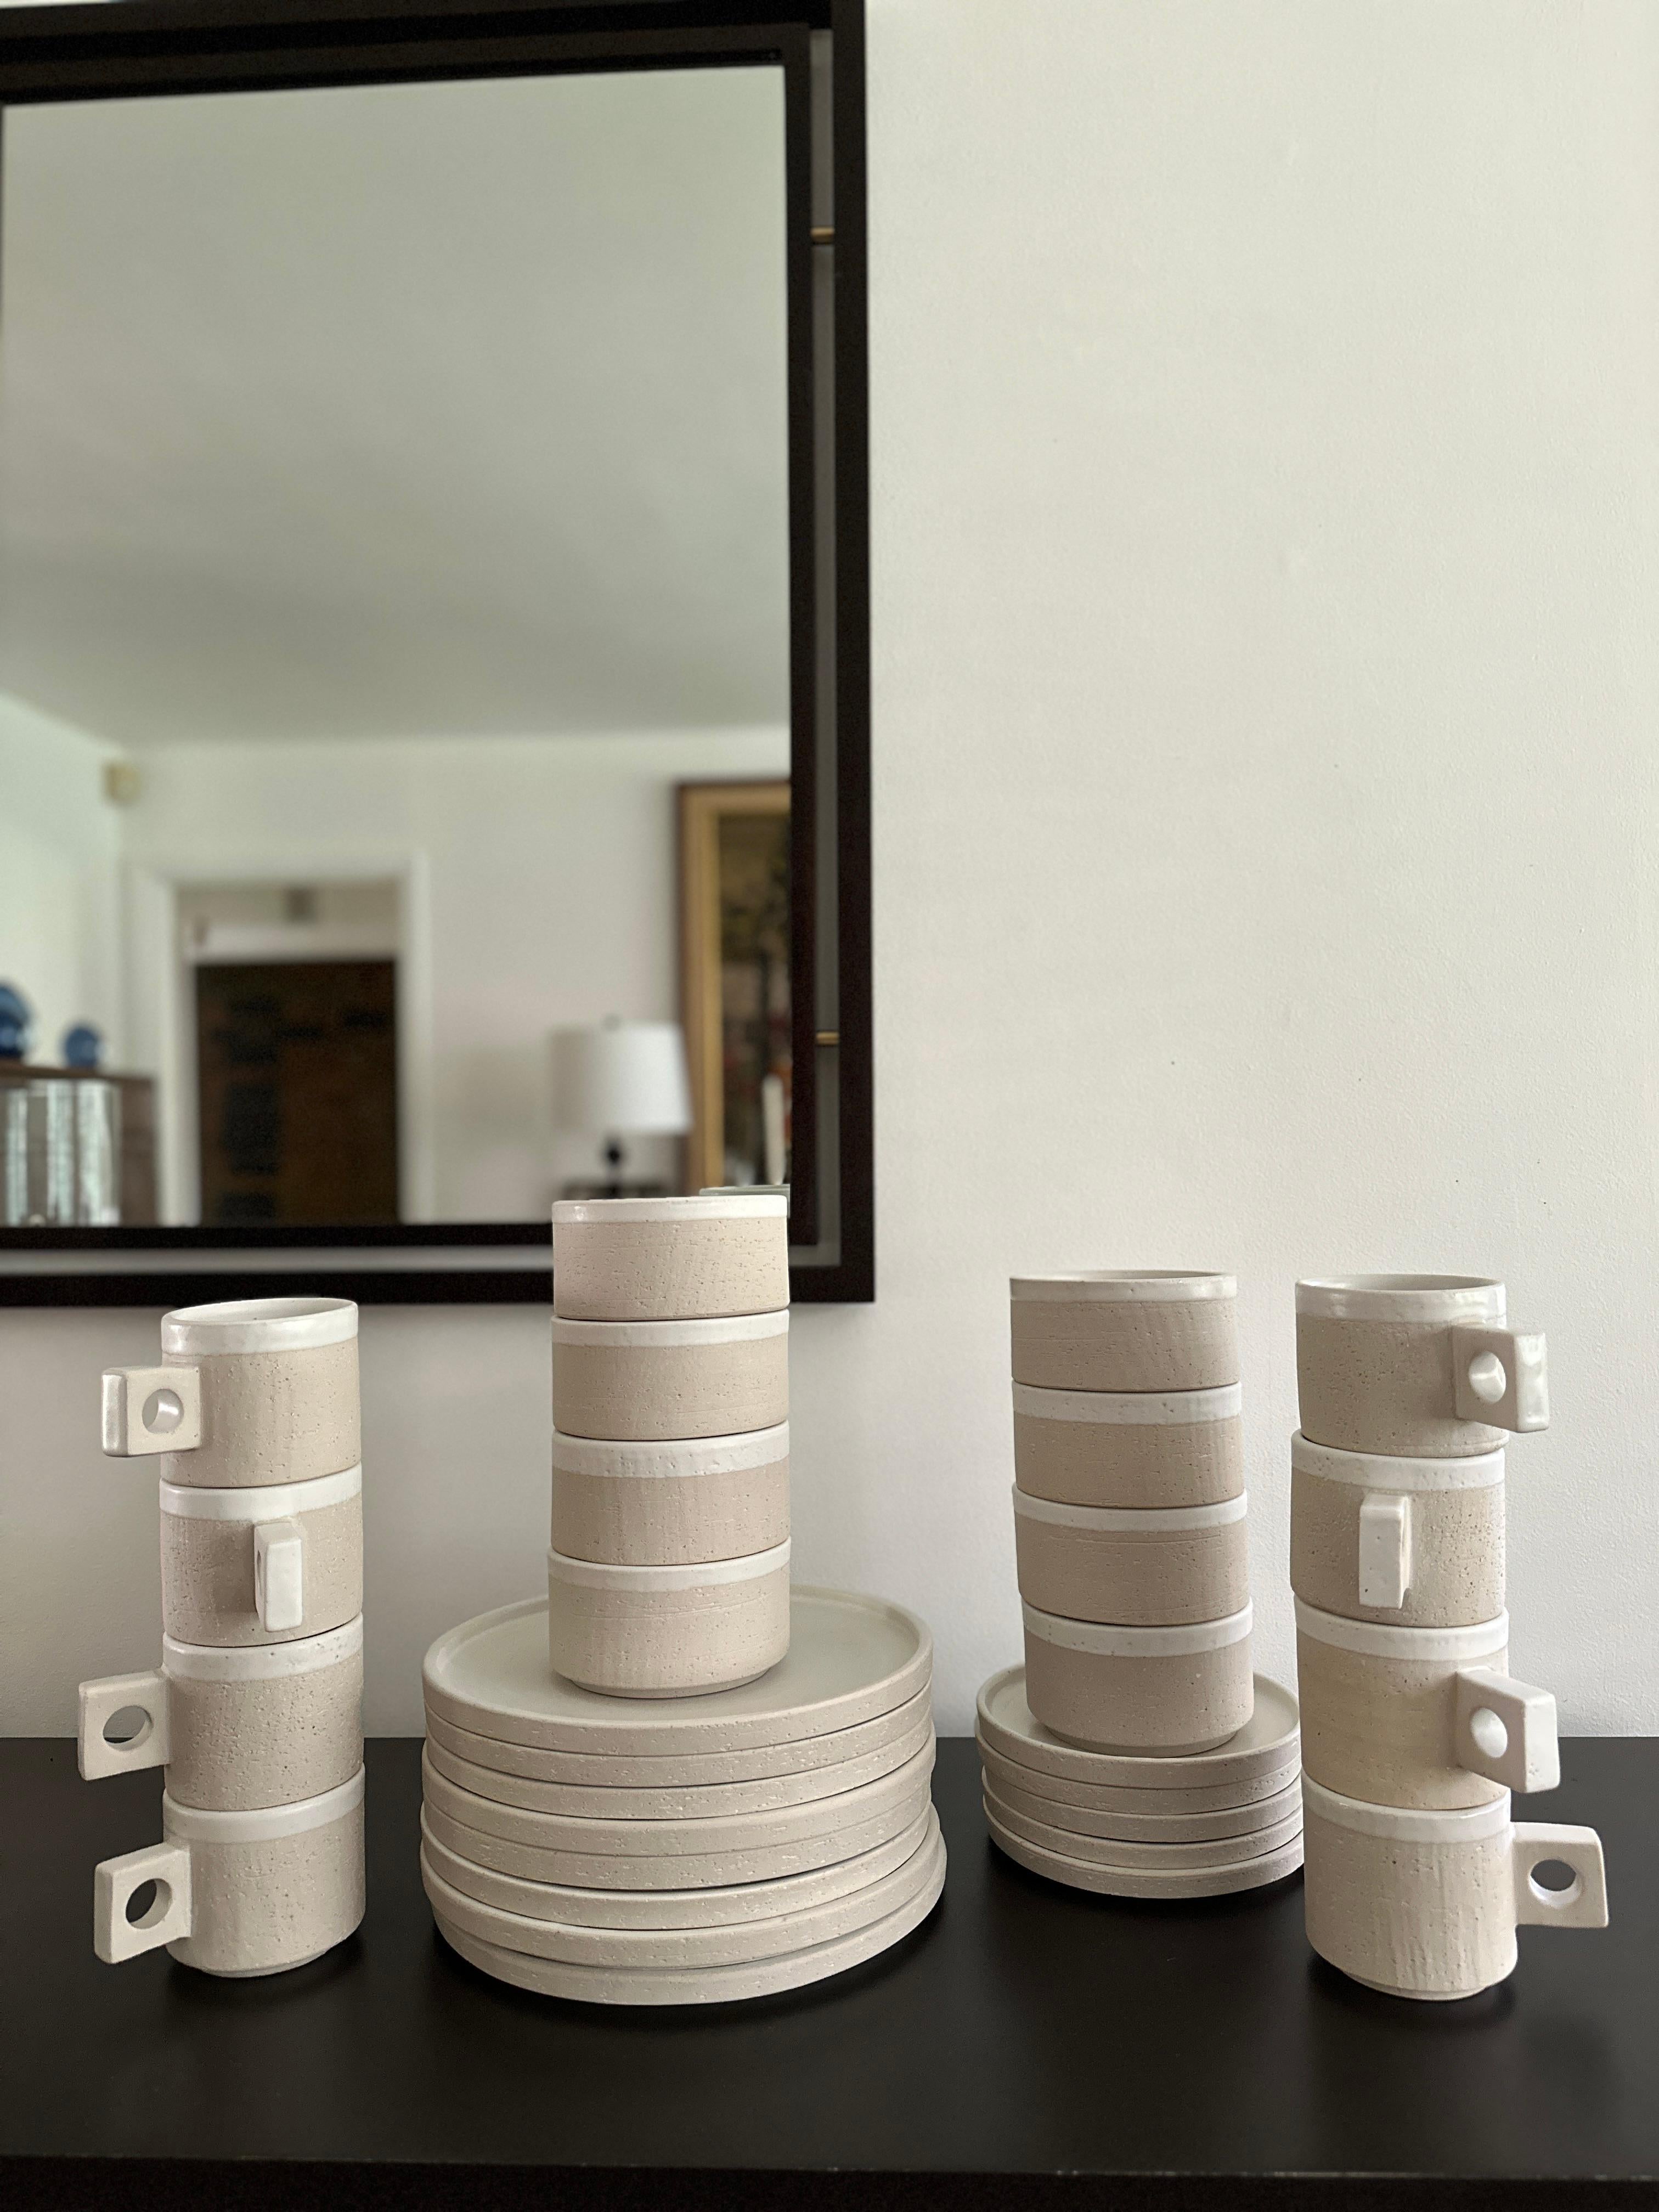 Ensemble de 29 pièces de poterie en grès avec une céramique blanche surglacée, conçu par Jonathan Adler. Le motif s'appelle 